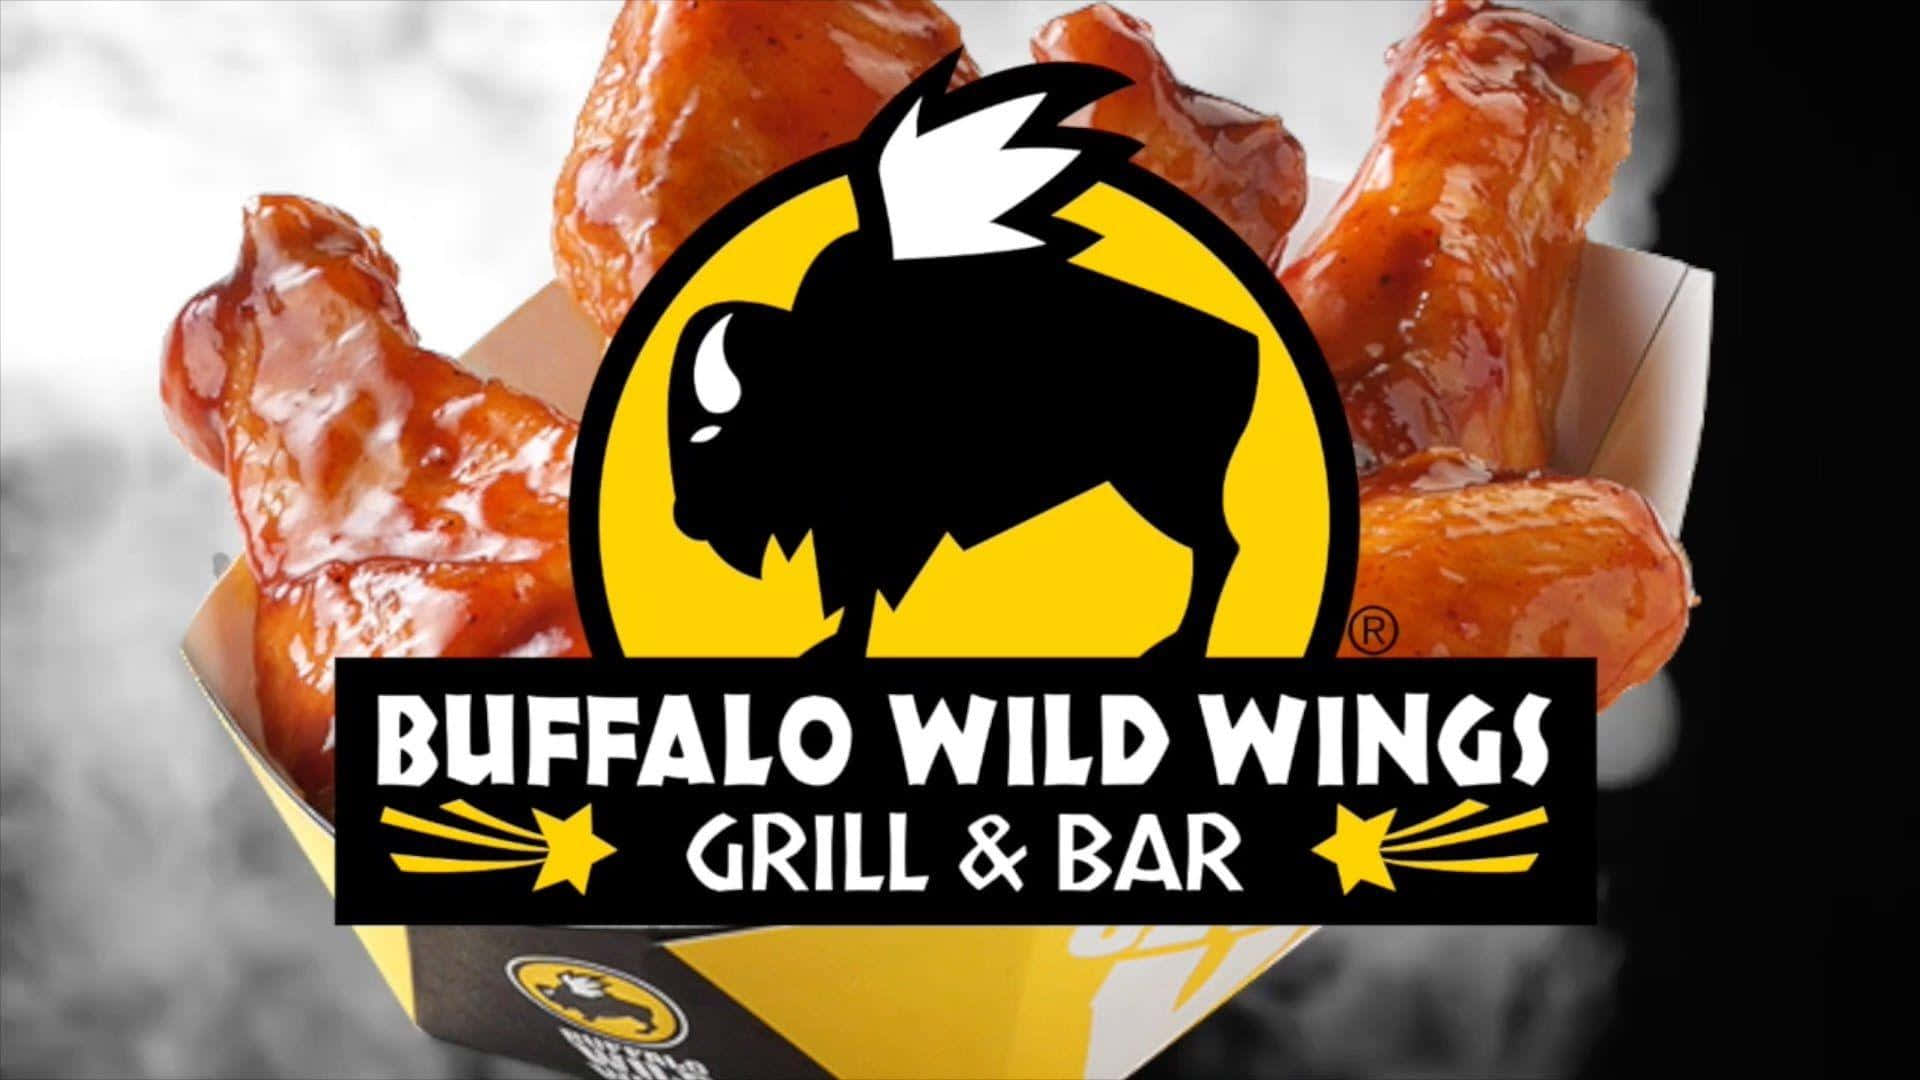 Tillfredsställdin Hunger Med Läckra Traditionella Och Benfria Vingar Från Buffalo Wild Wings.